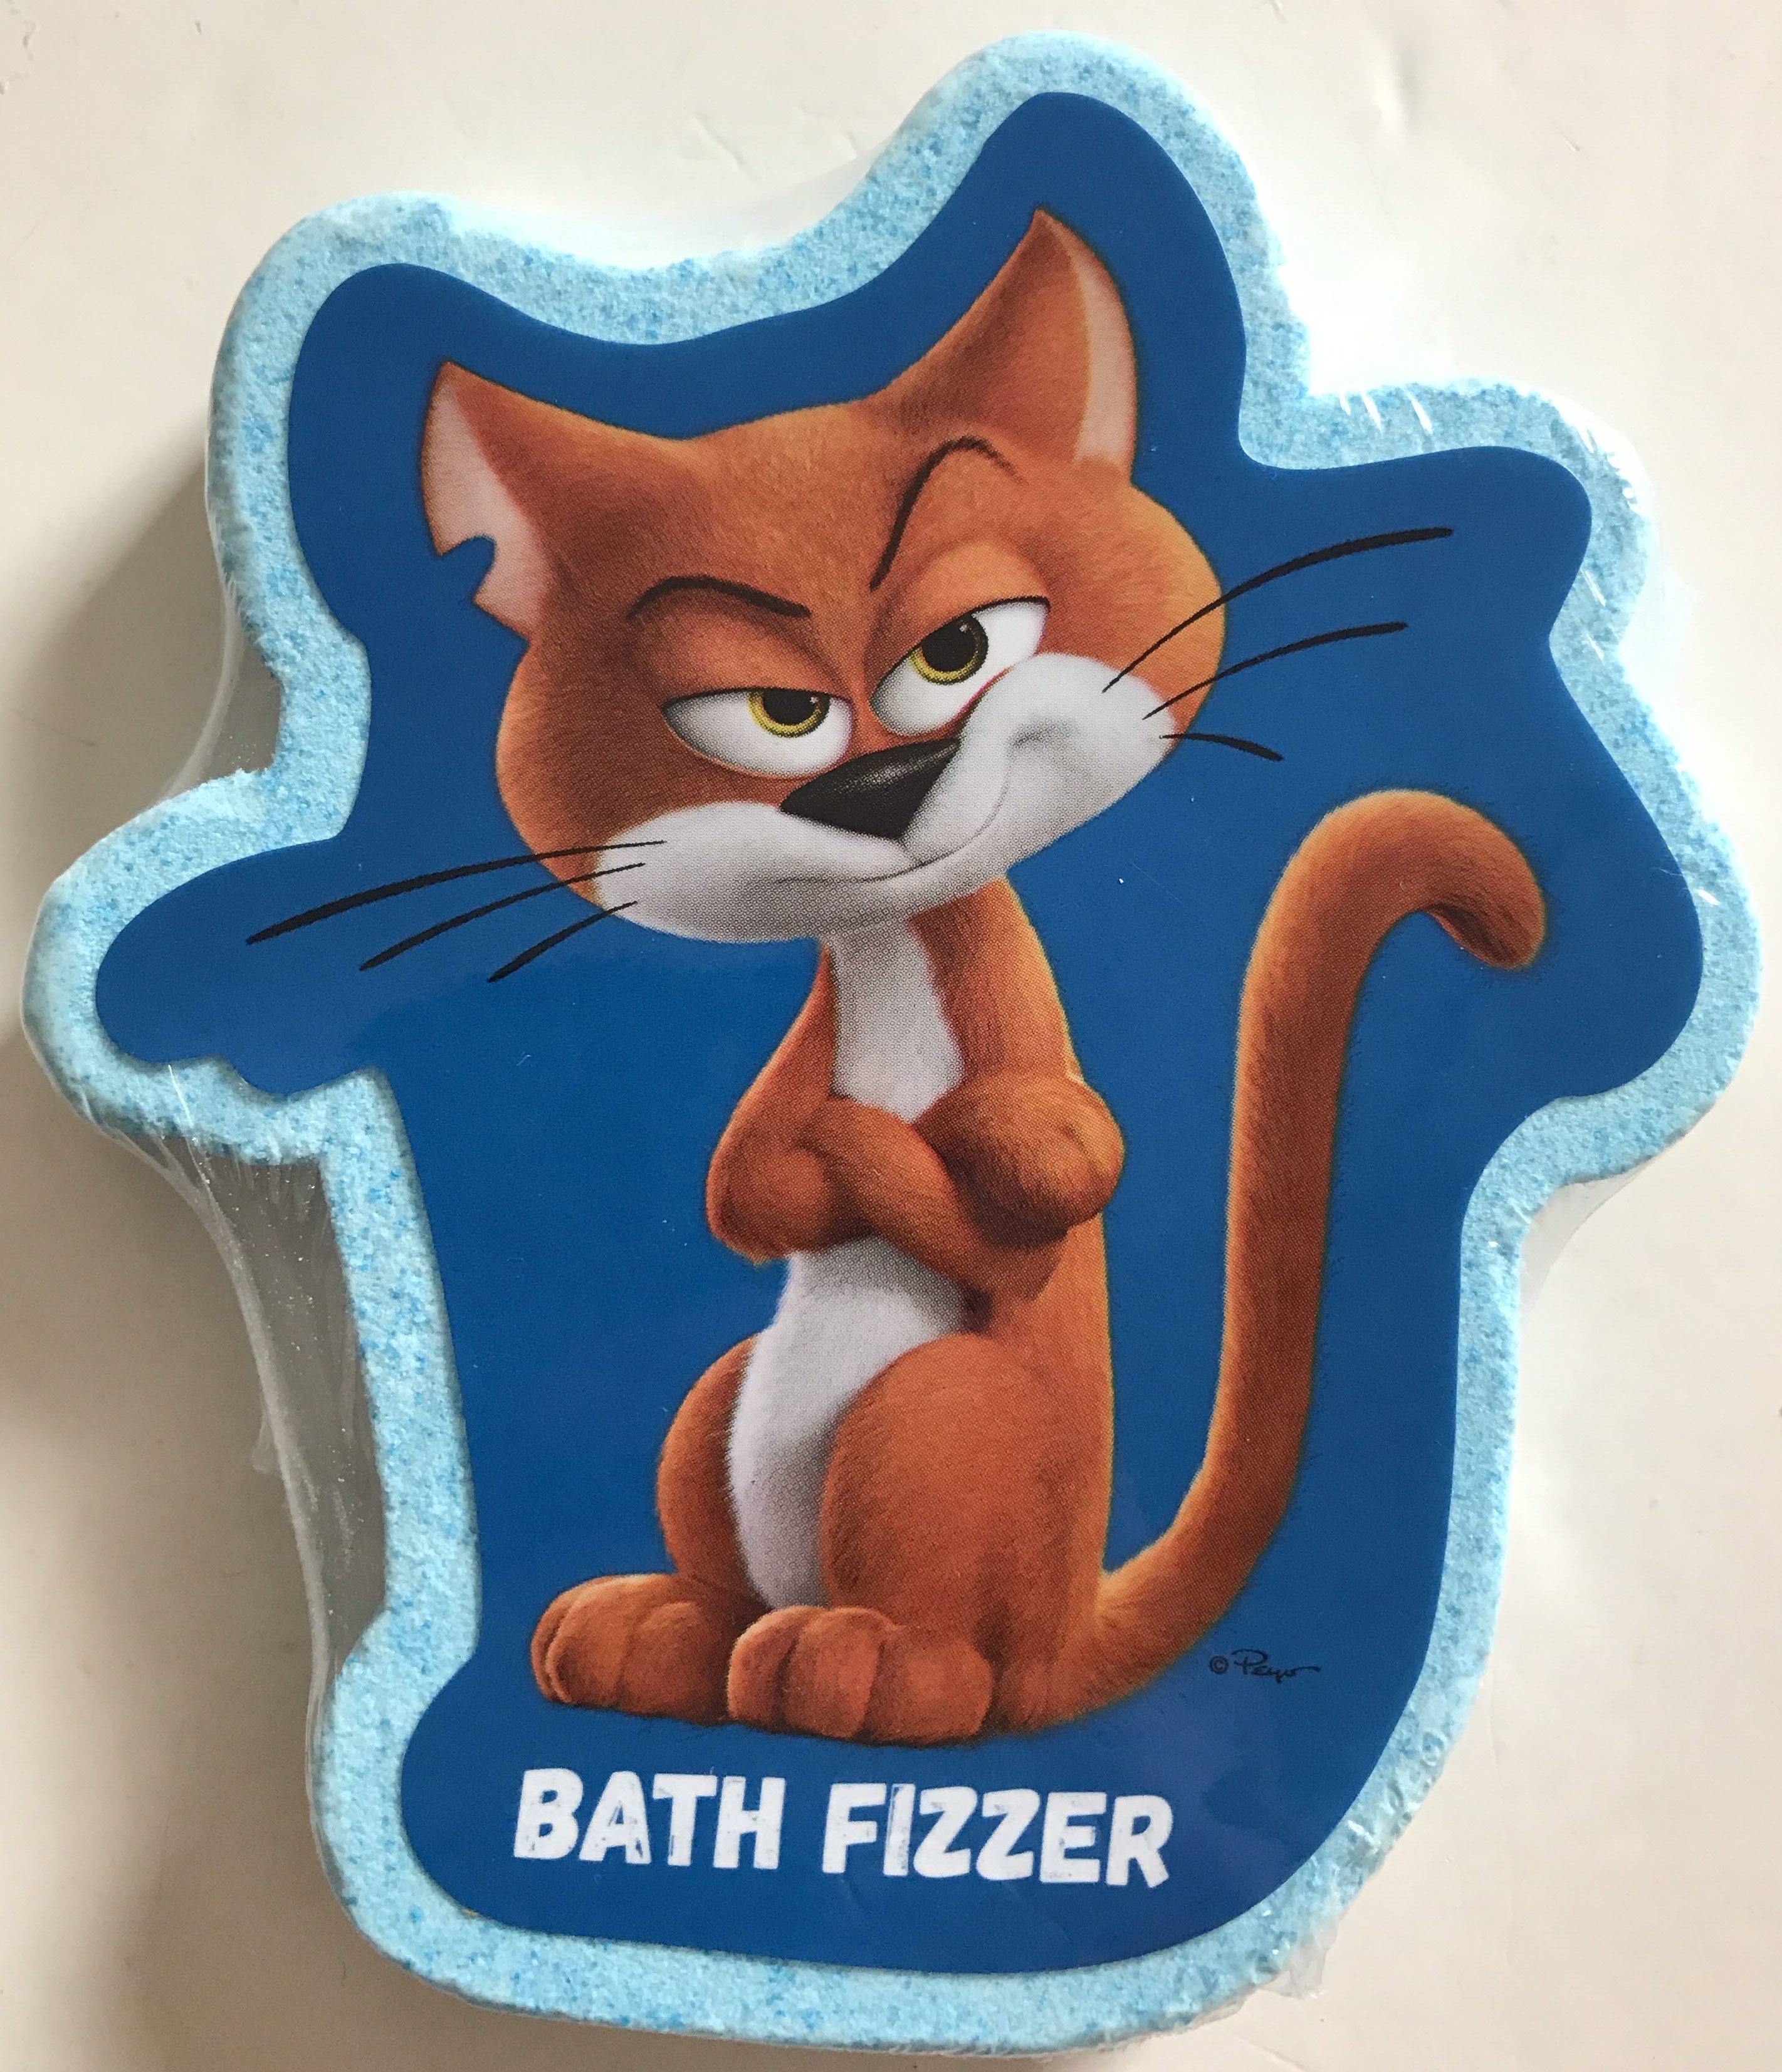 Bath Fizzer - Produit - fr